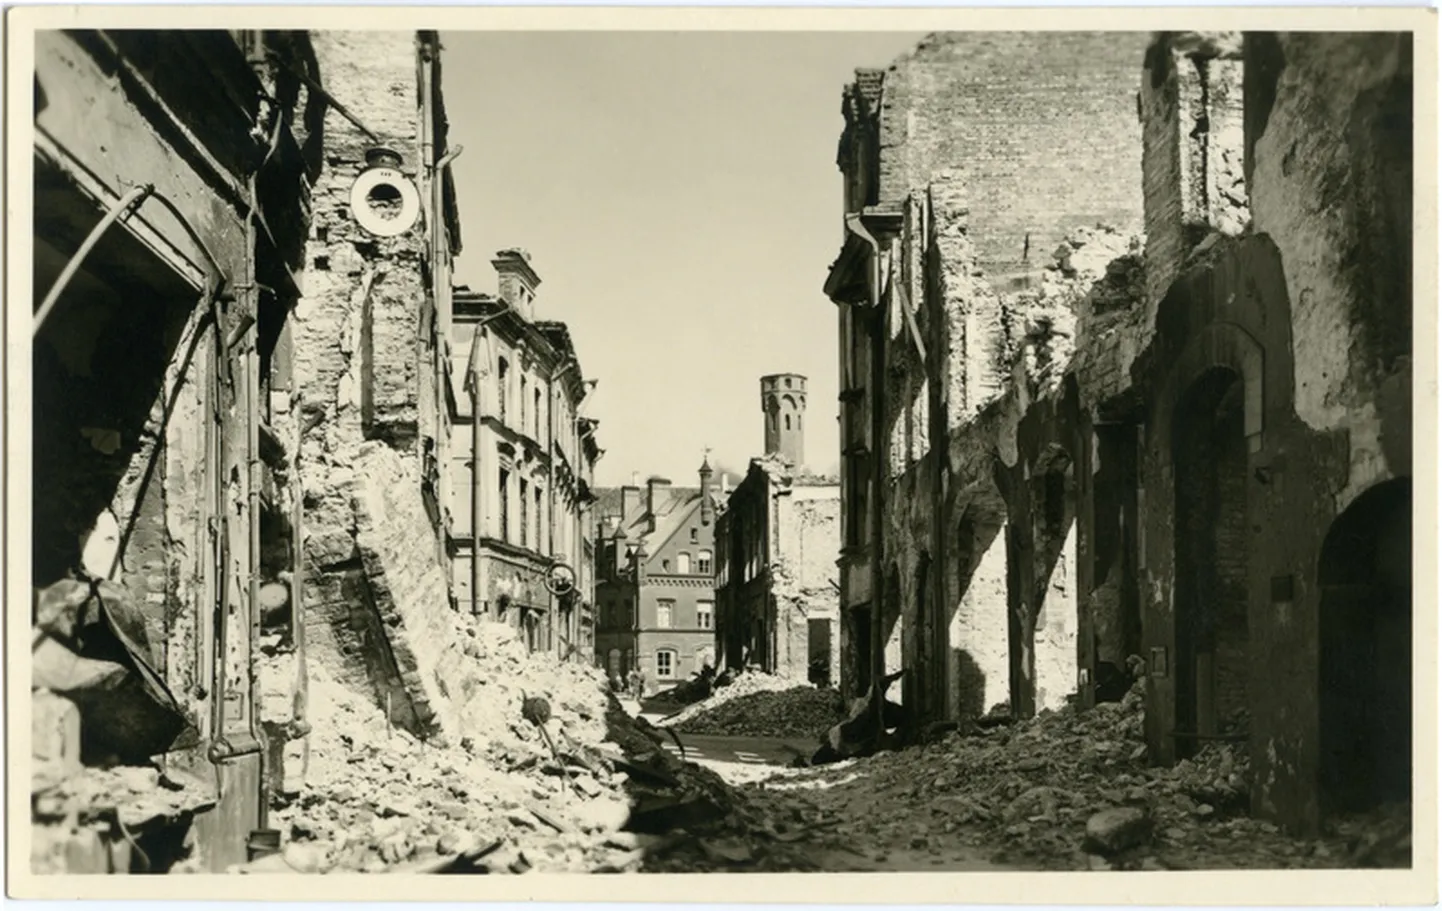 Улица Харью стала символом мартовской бомбардировки. На заднем плане видна “обезглавленная” Ратуша.